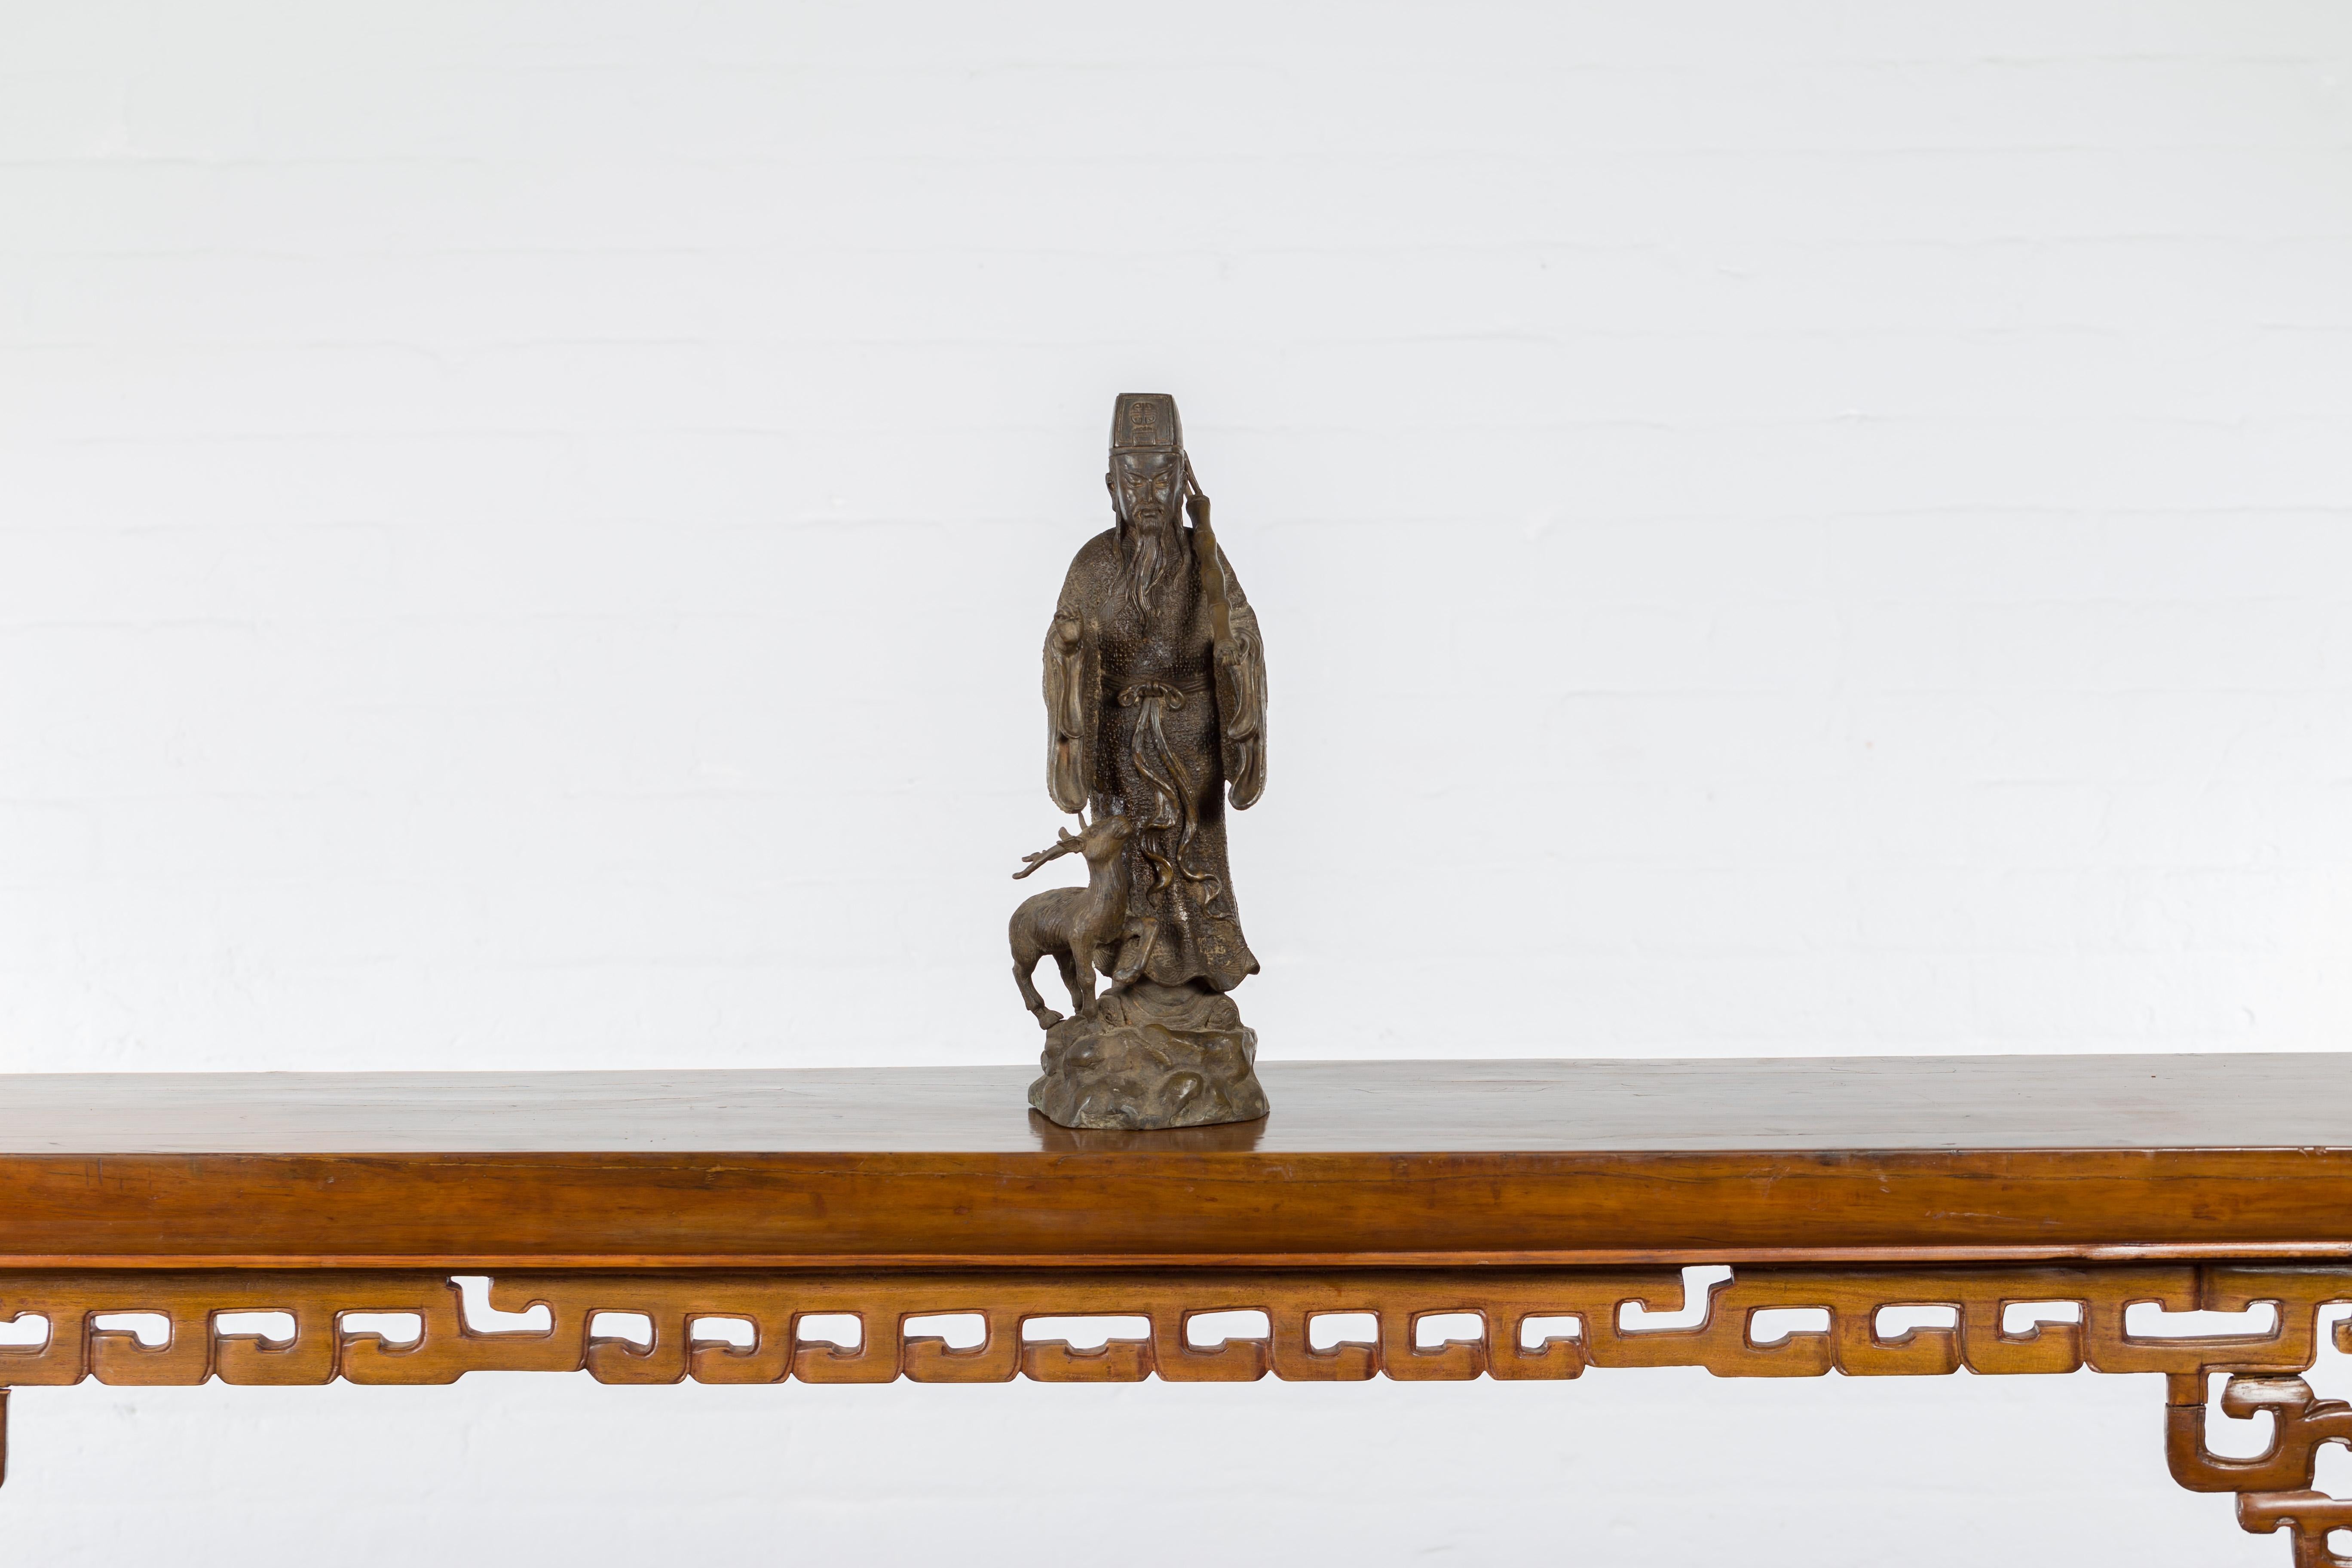 Statuette vintage en bronze coulé à la cire perdue d'une figure ancestrale chinoise à la patine texturée. Créée selon la technique traditionnelle de la cire perdue (à la cire Perdue) qui permet une grande précision dans les détails, cette statuette